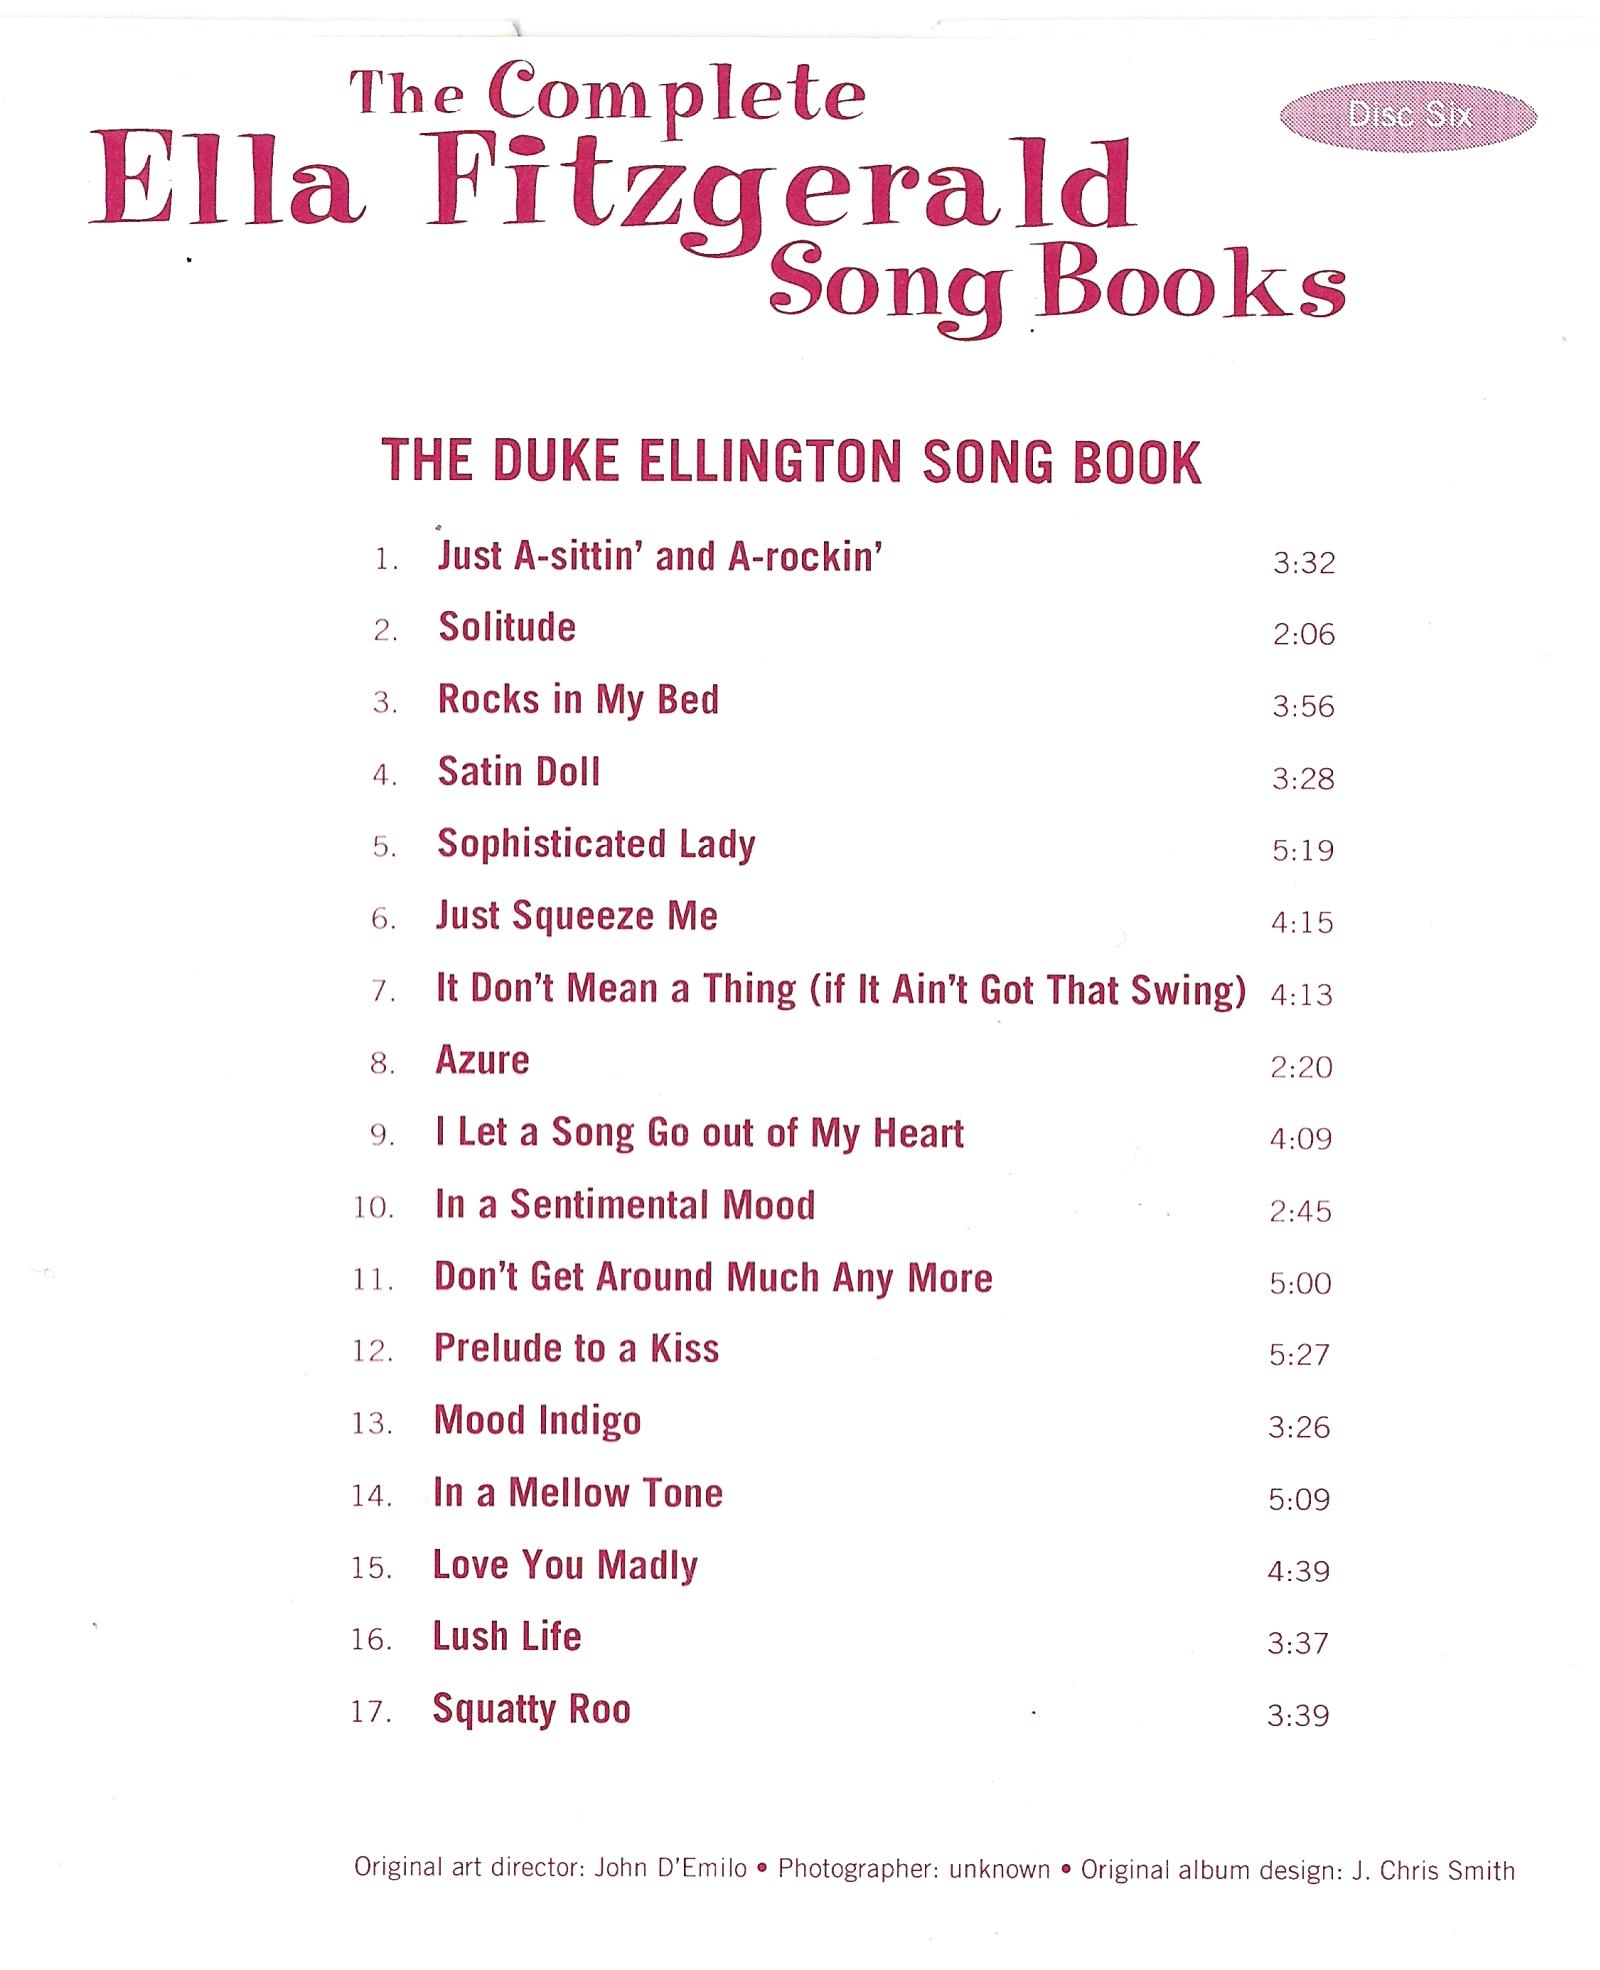 Ella Fitzgerald - The Complete Songbooks Vol.06 -Duke Ellington